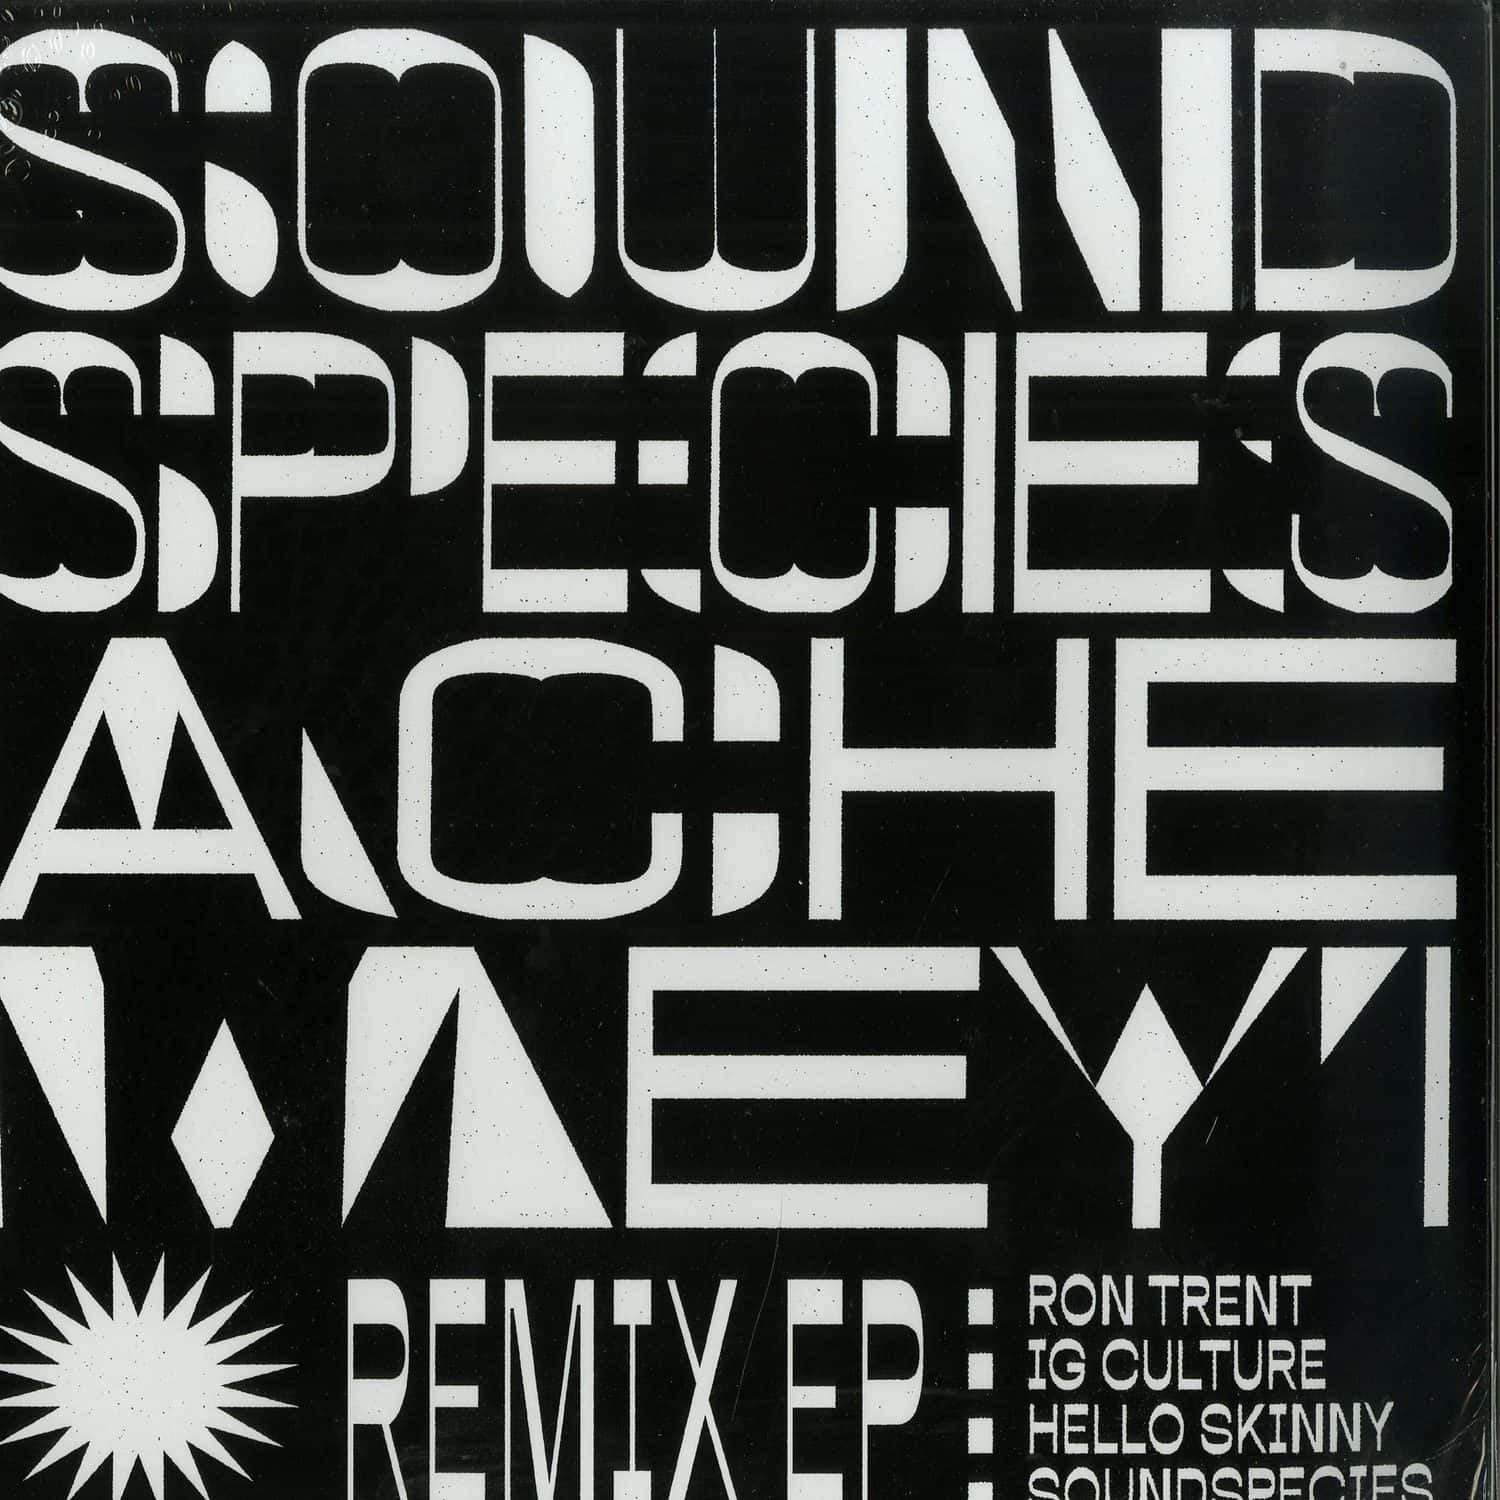 Sound Species & Ache Meyi - REMIX EP 